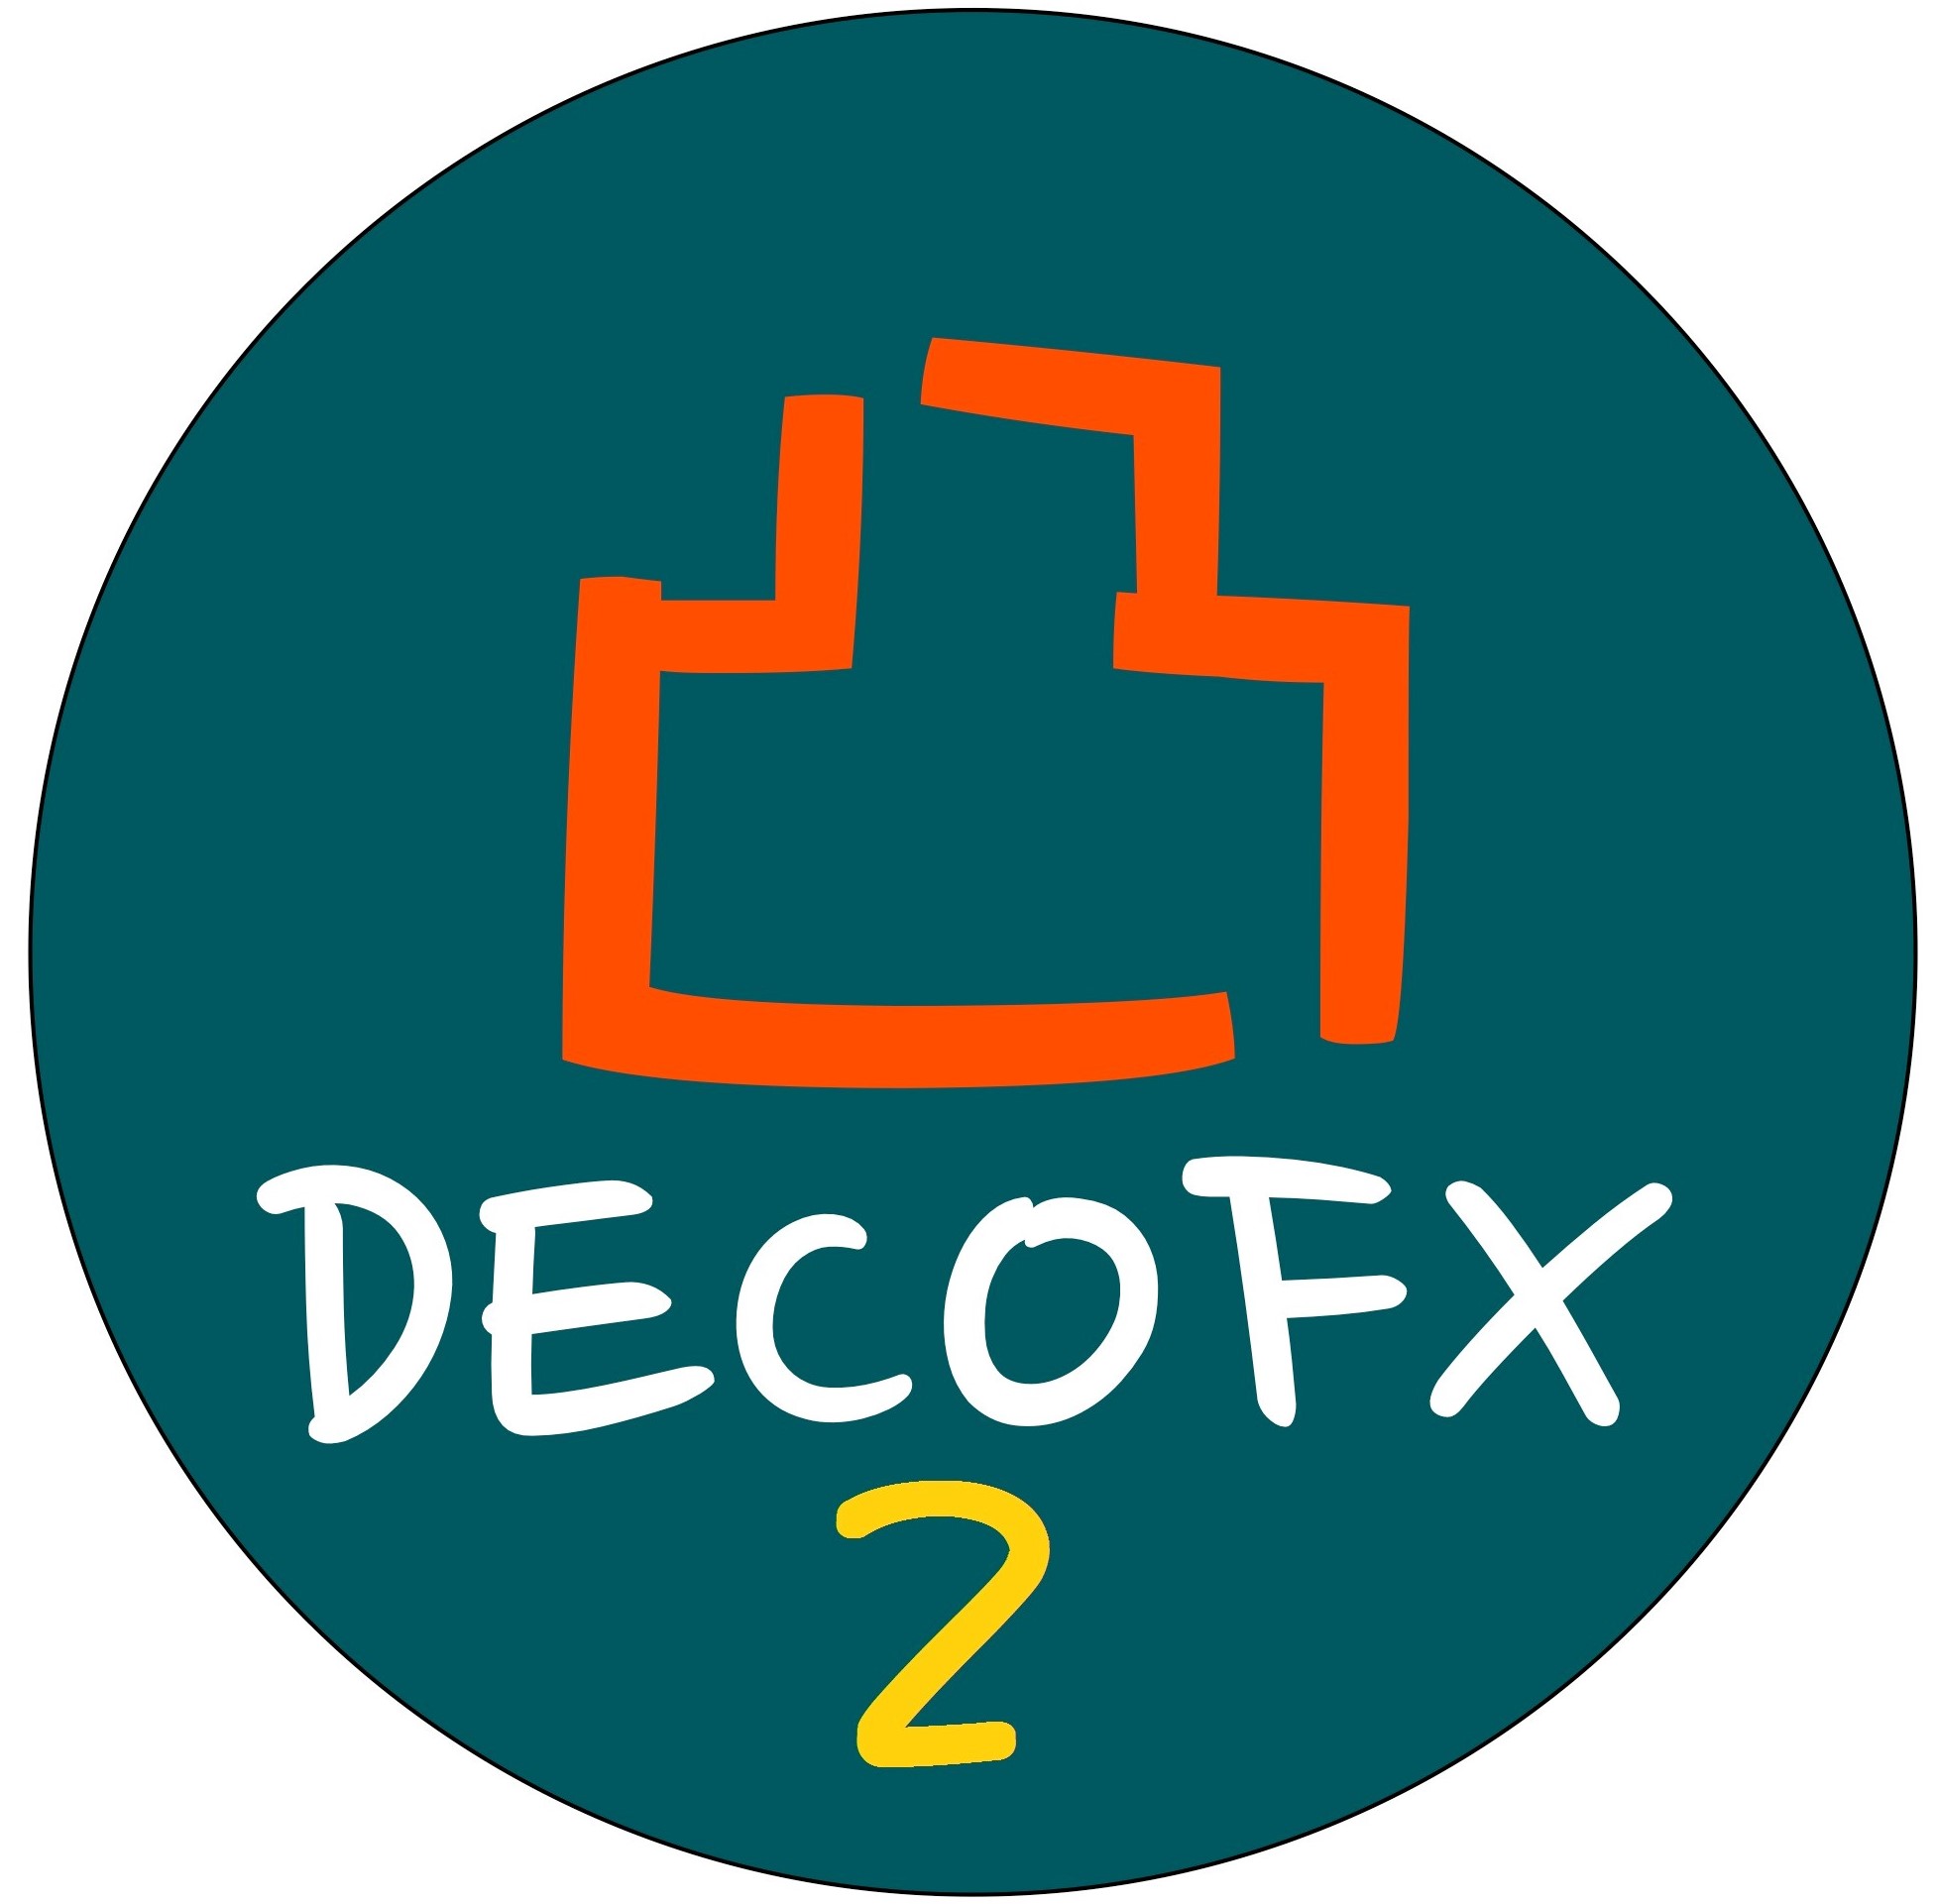 お好みの時間軸でトレードポイントを可視化『DECO FX2』 インジケーター・電子書籍